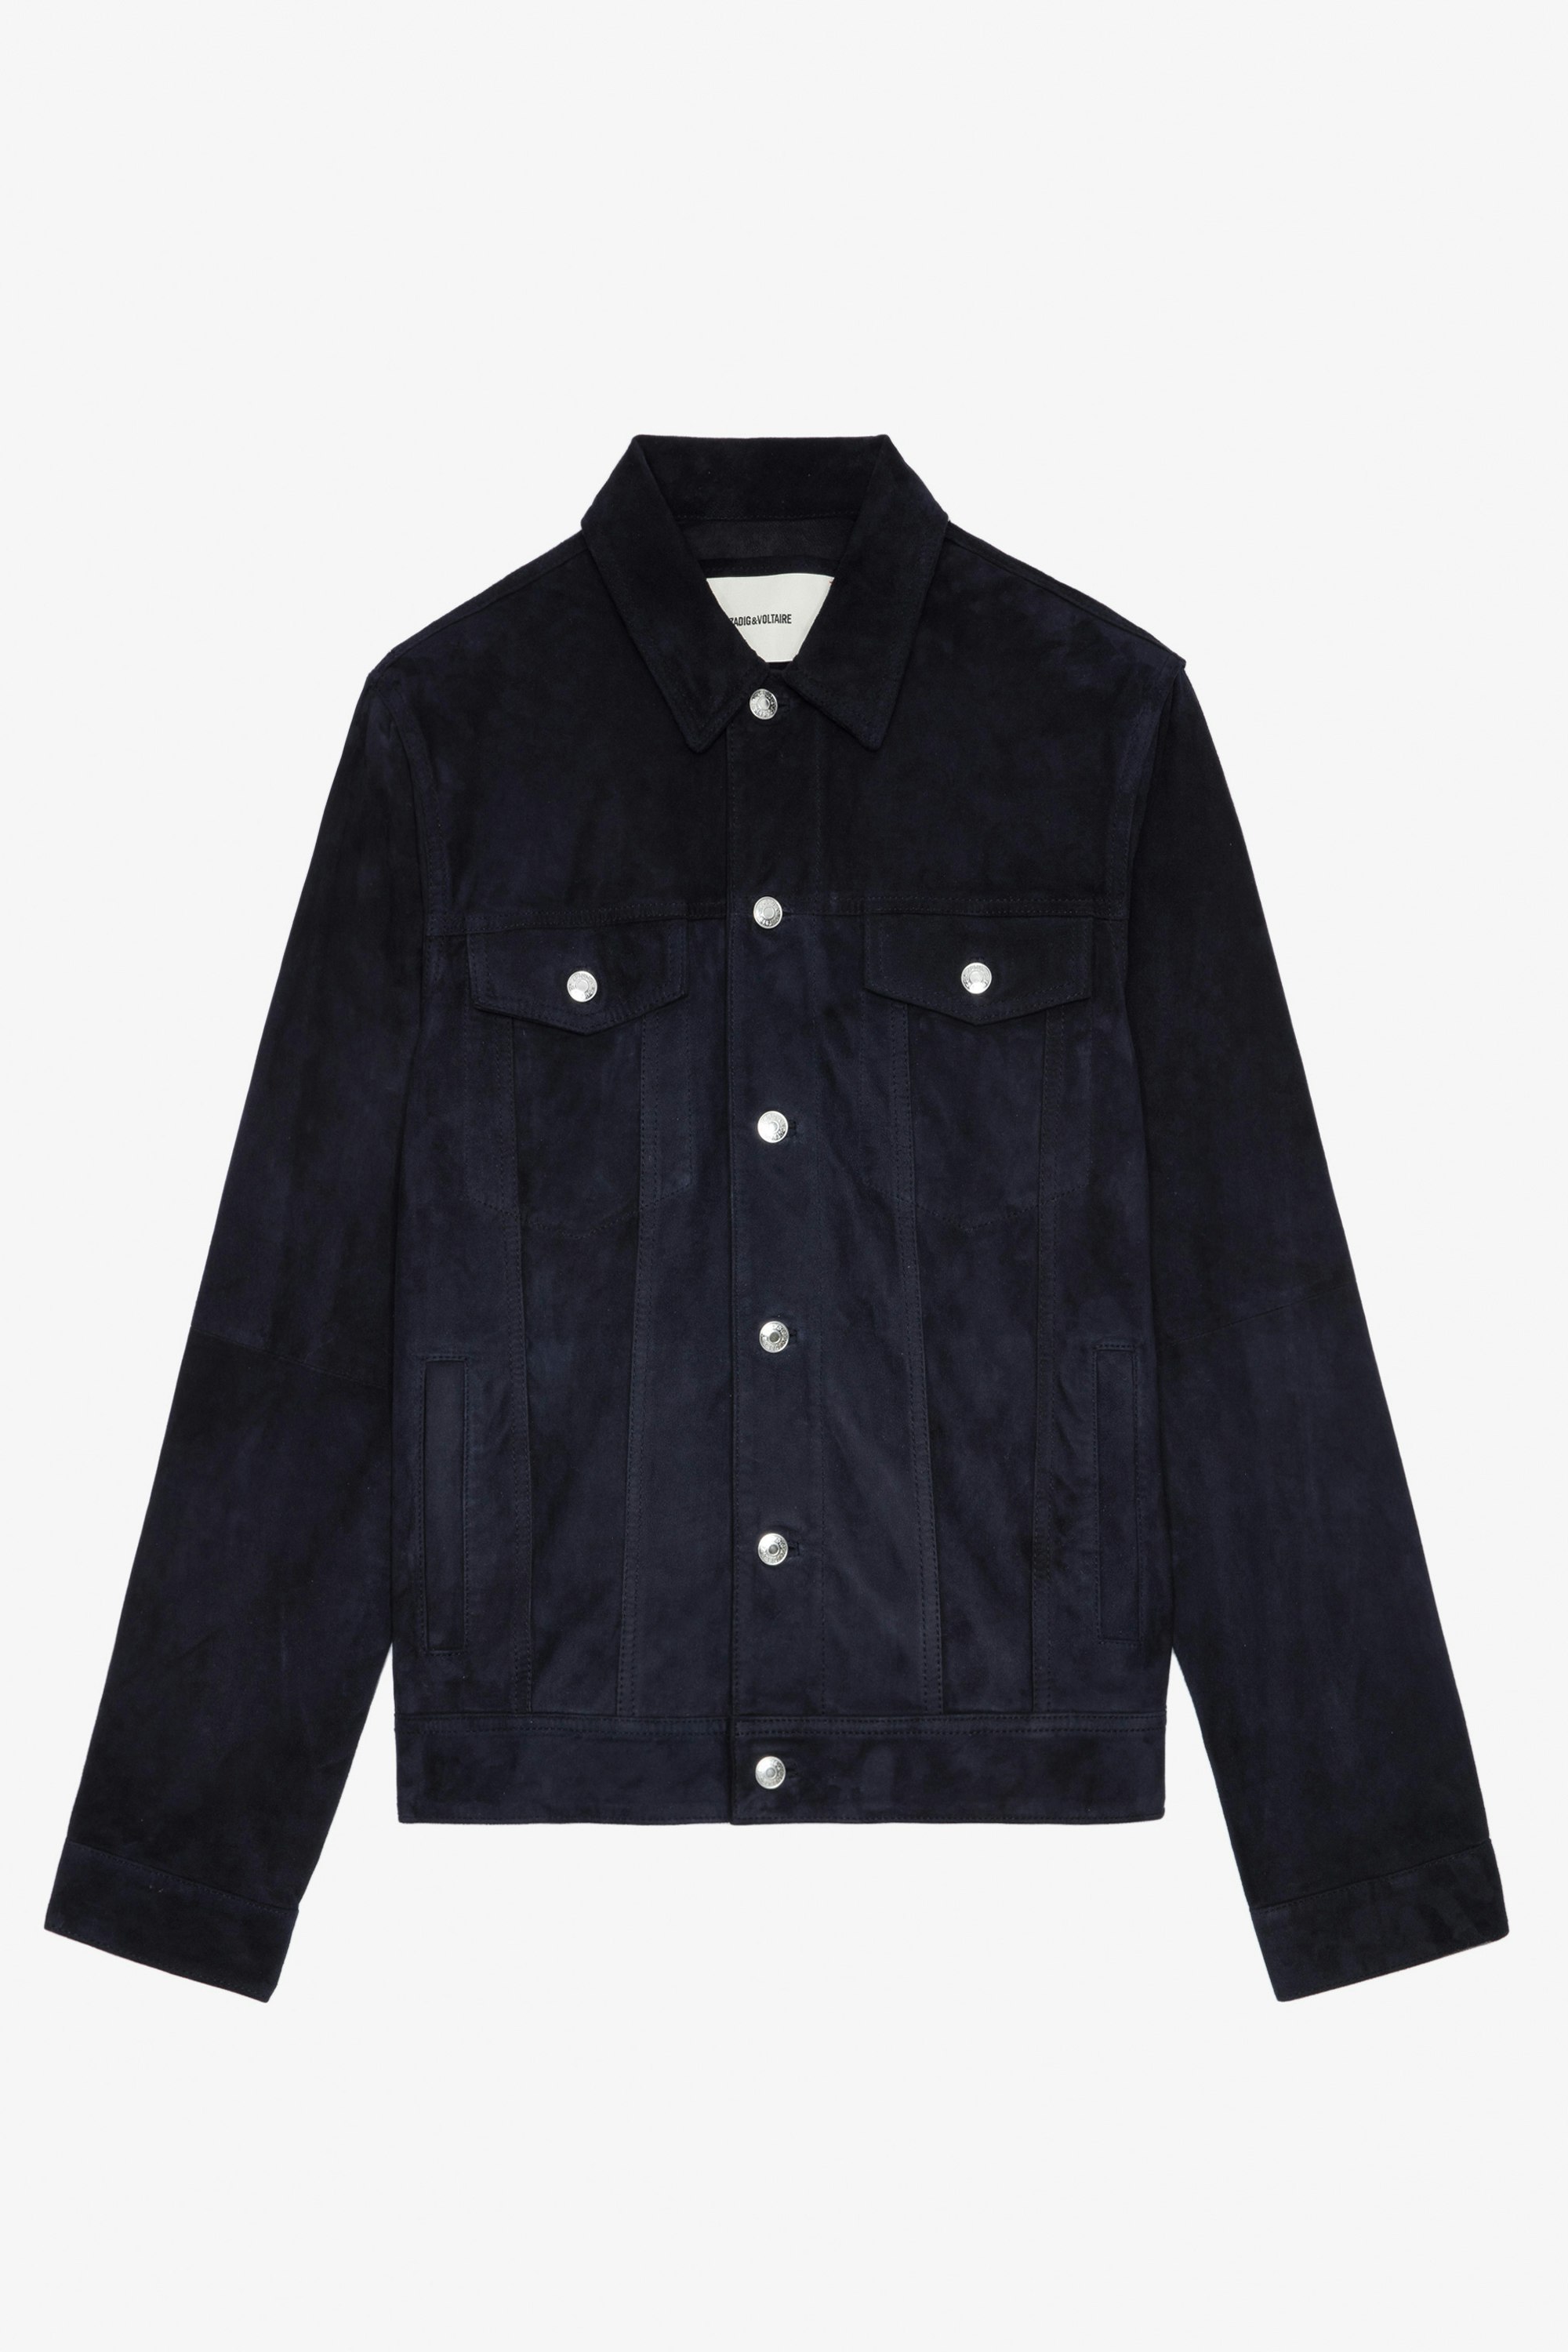 Base Suede Jacket - Men’s navy blue suede jacket